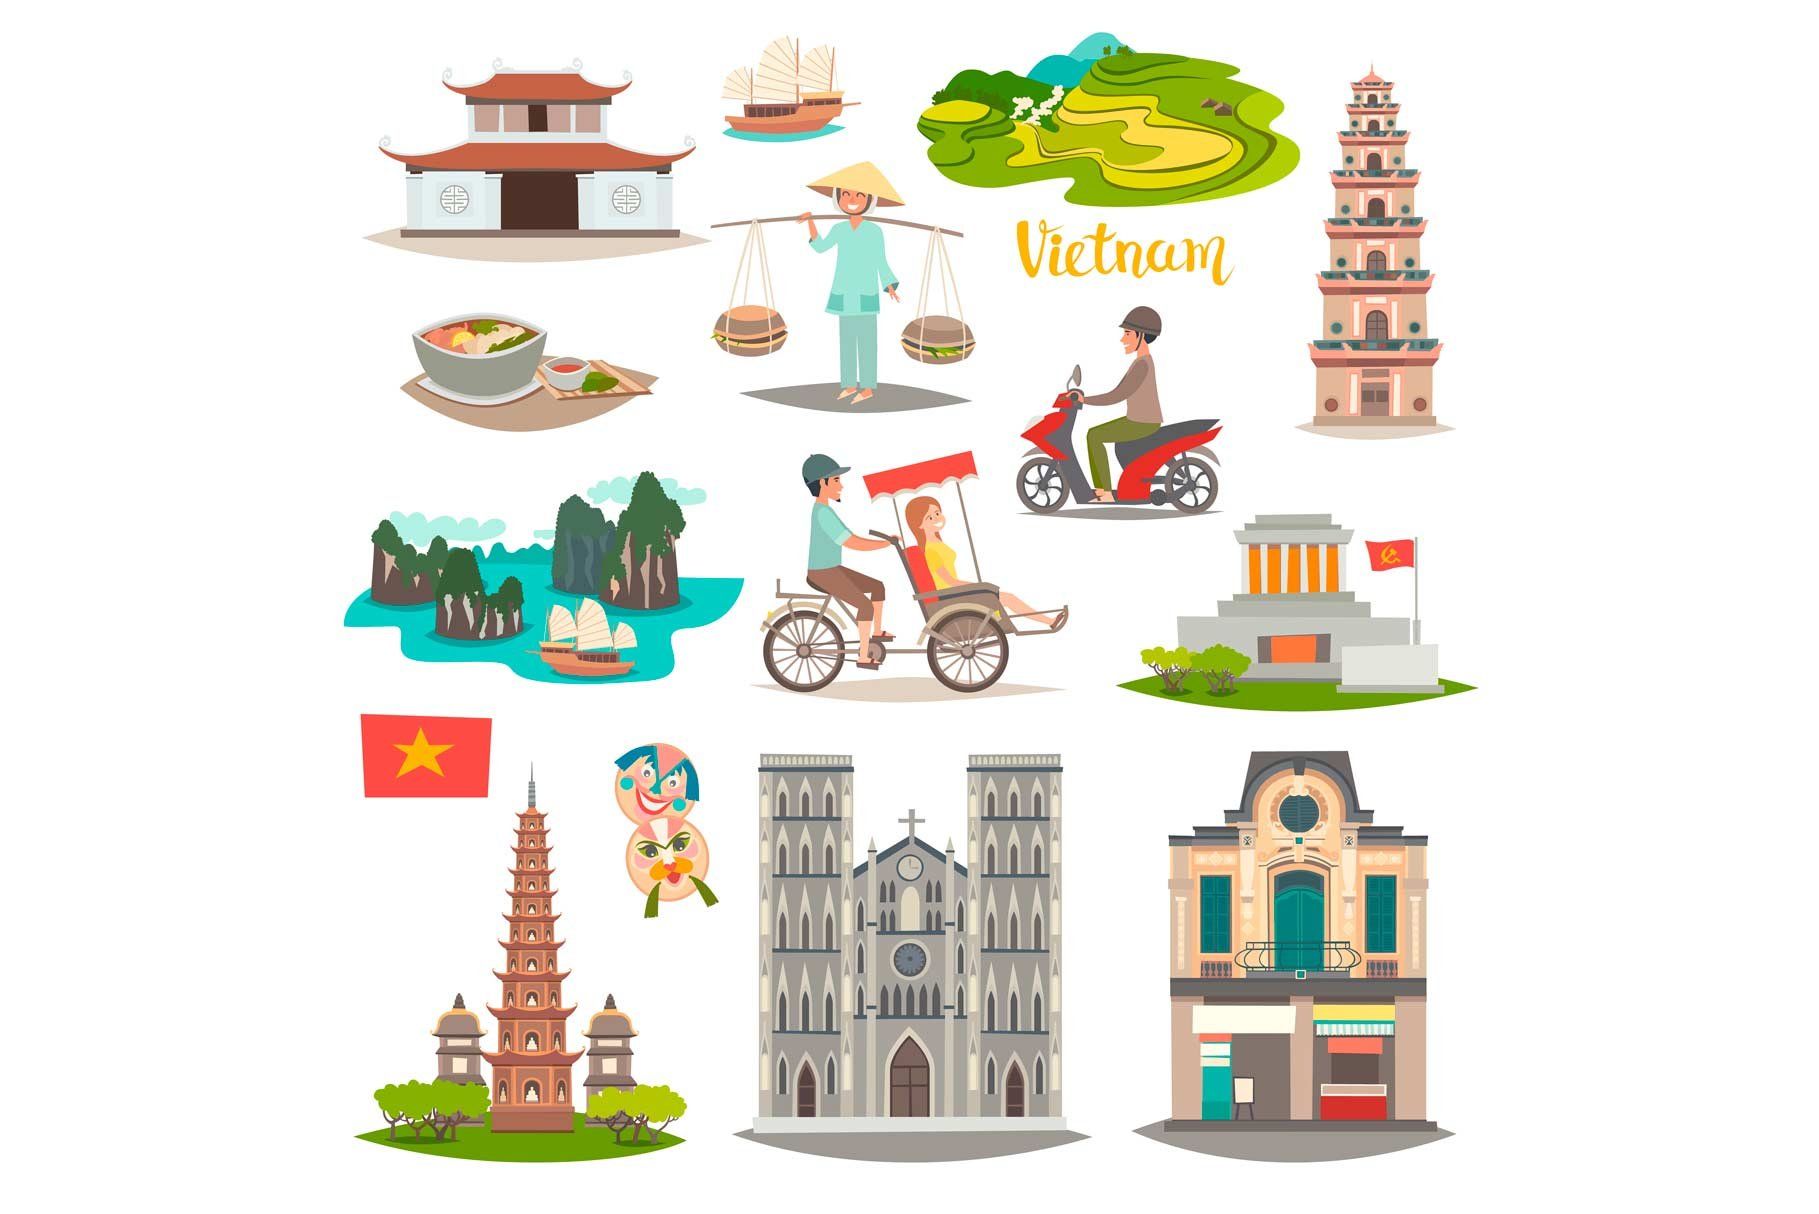 Tổng hợp website Sở du lịch các tỉnh, thành tại Việt Nam